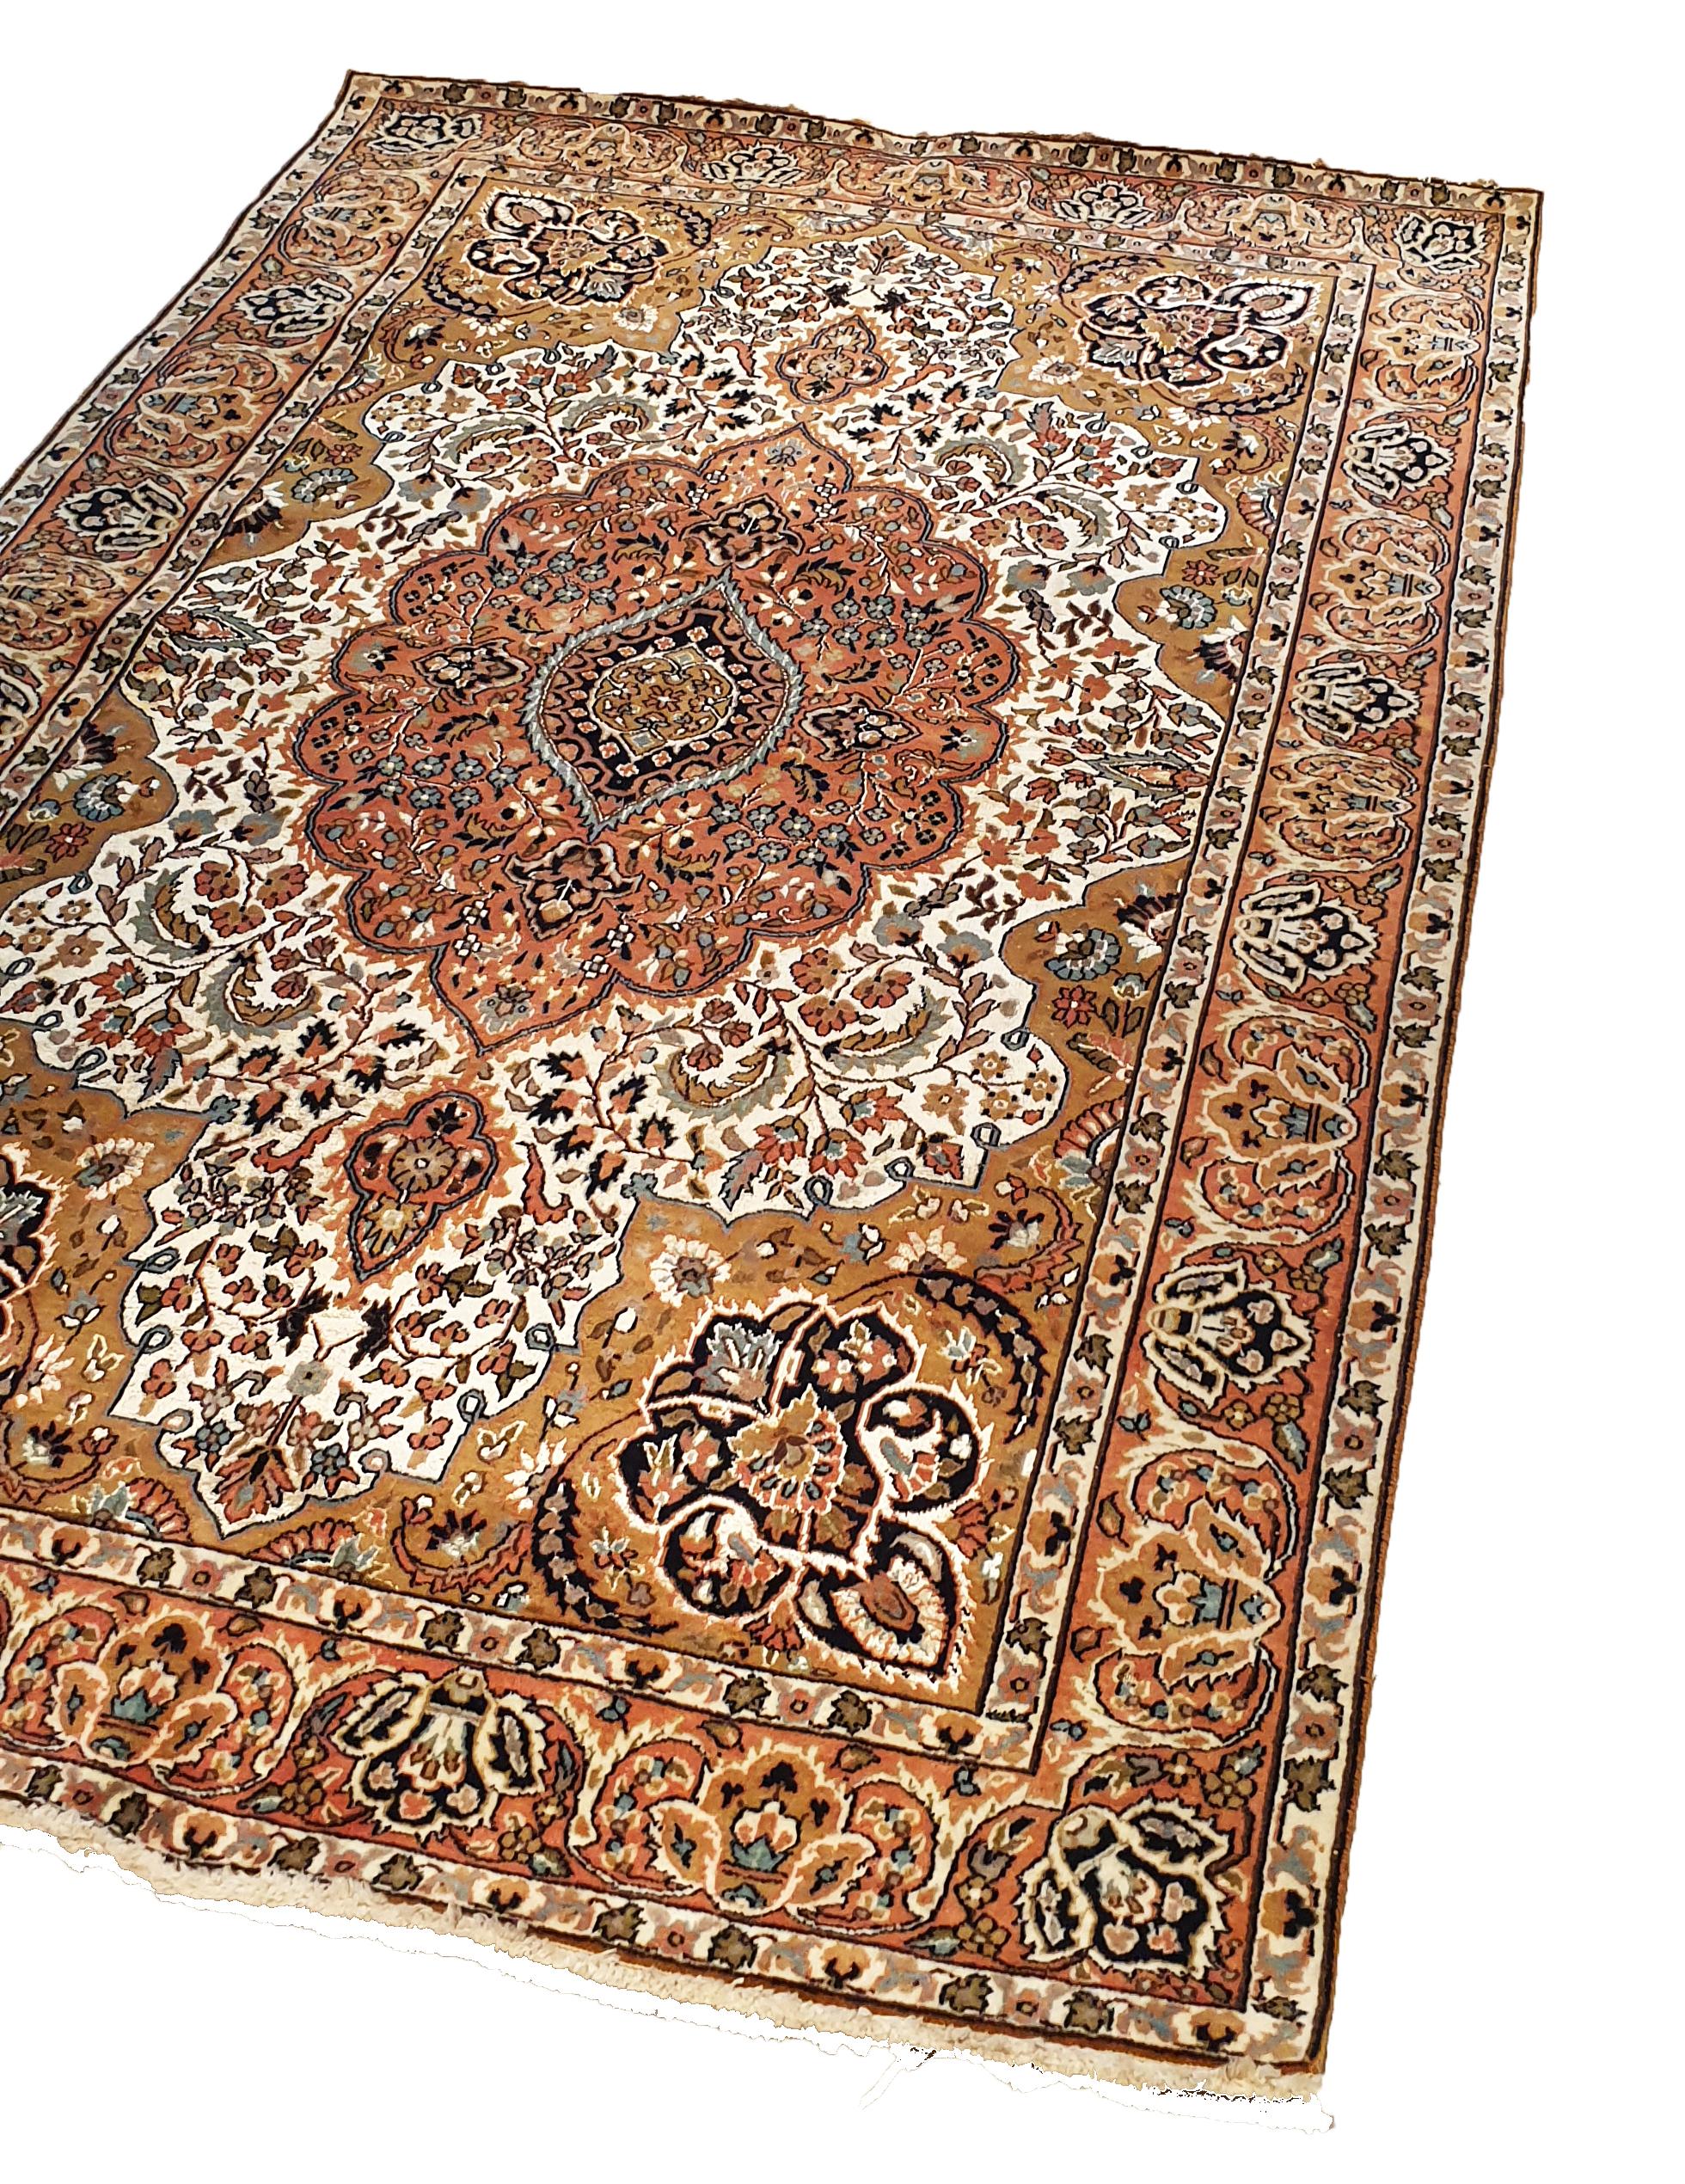 N° 736, handgeknüpfter Teppich in einer indischen Fabrik aus dem 20. Jahrhundert.
Hohe Qualität, schöne Grafiken und bemerkenswerte Finesse.
Perfekter Erhaltungszustand.

Maße: 185 x 115 cm.